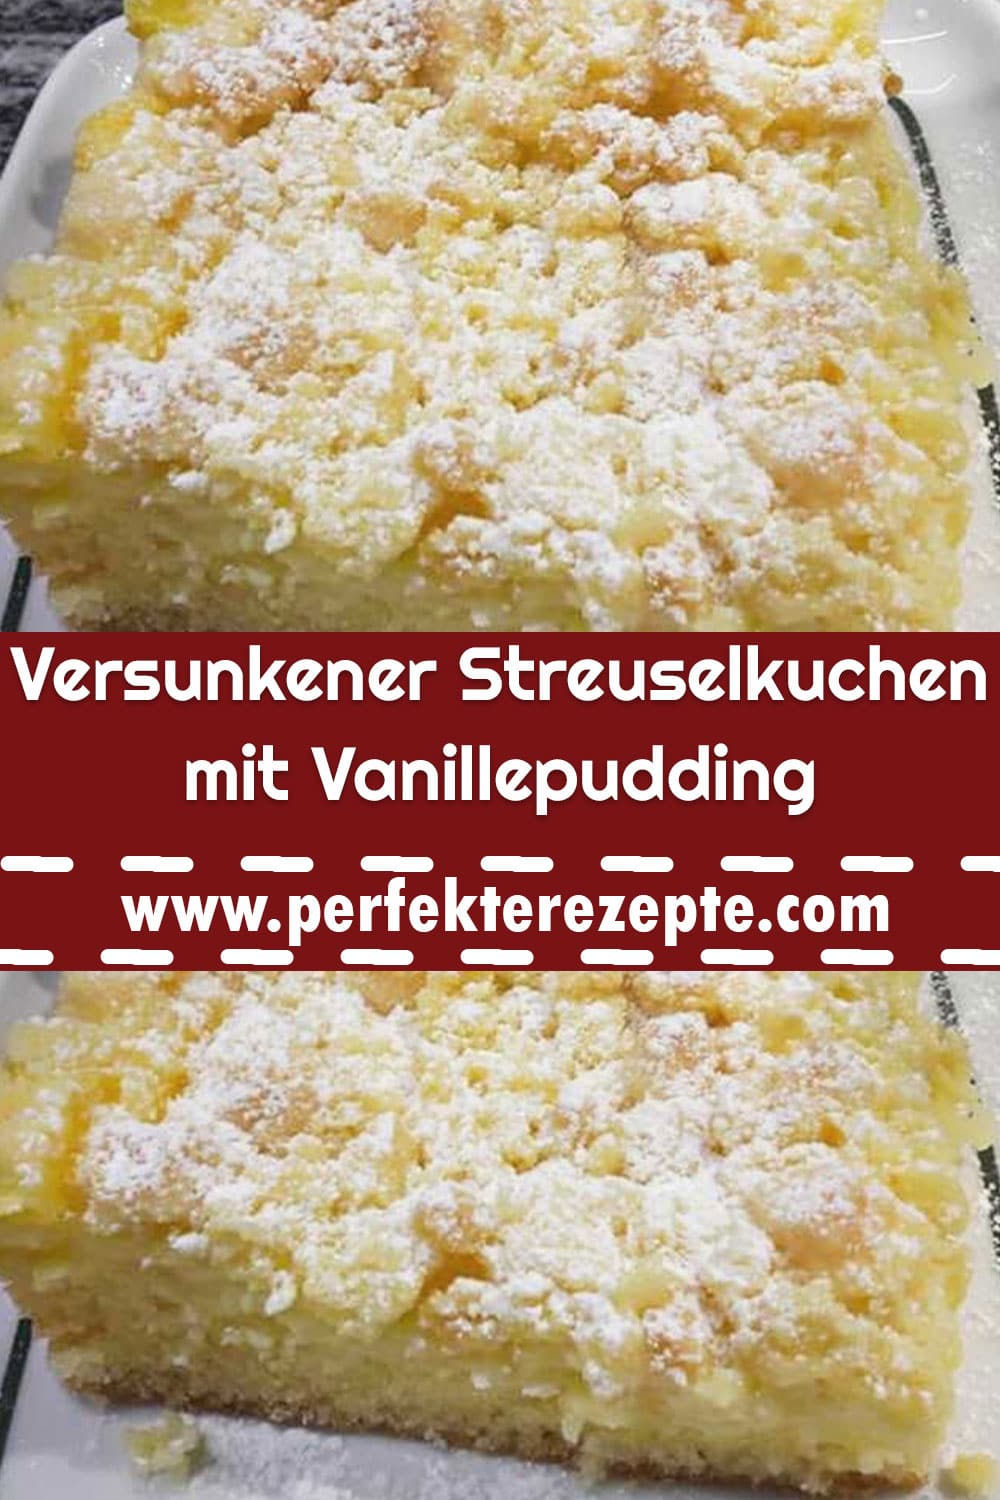 Versunkener Streuselkuchen mit Vanillepudding